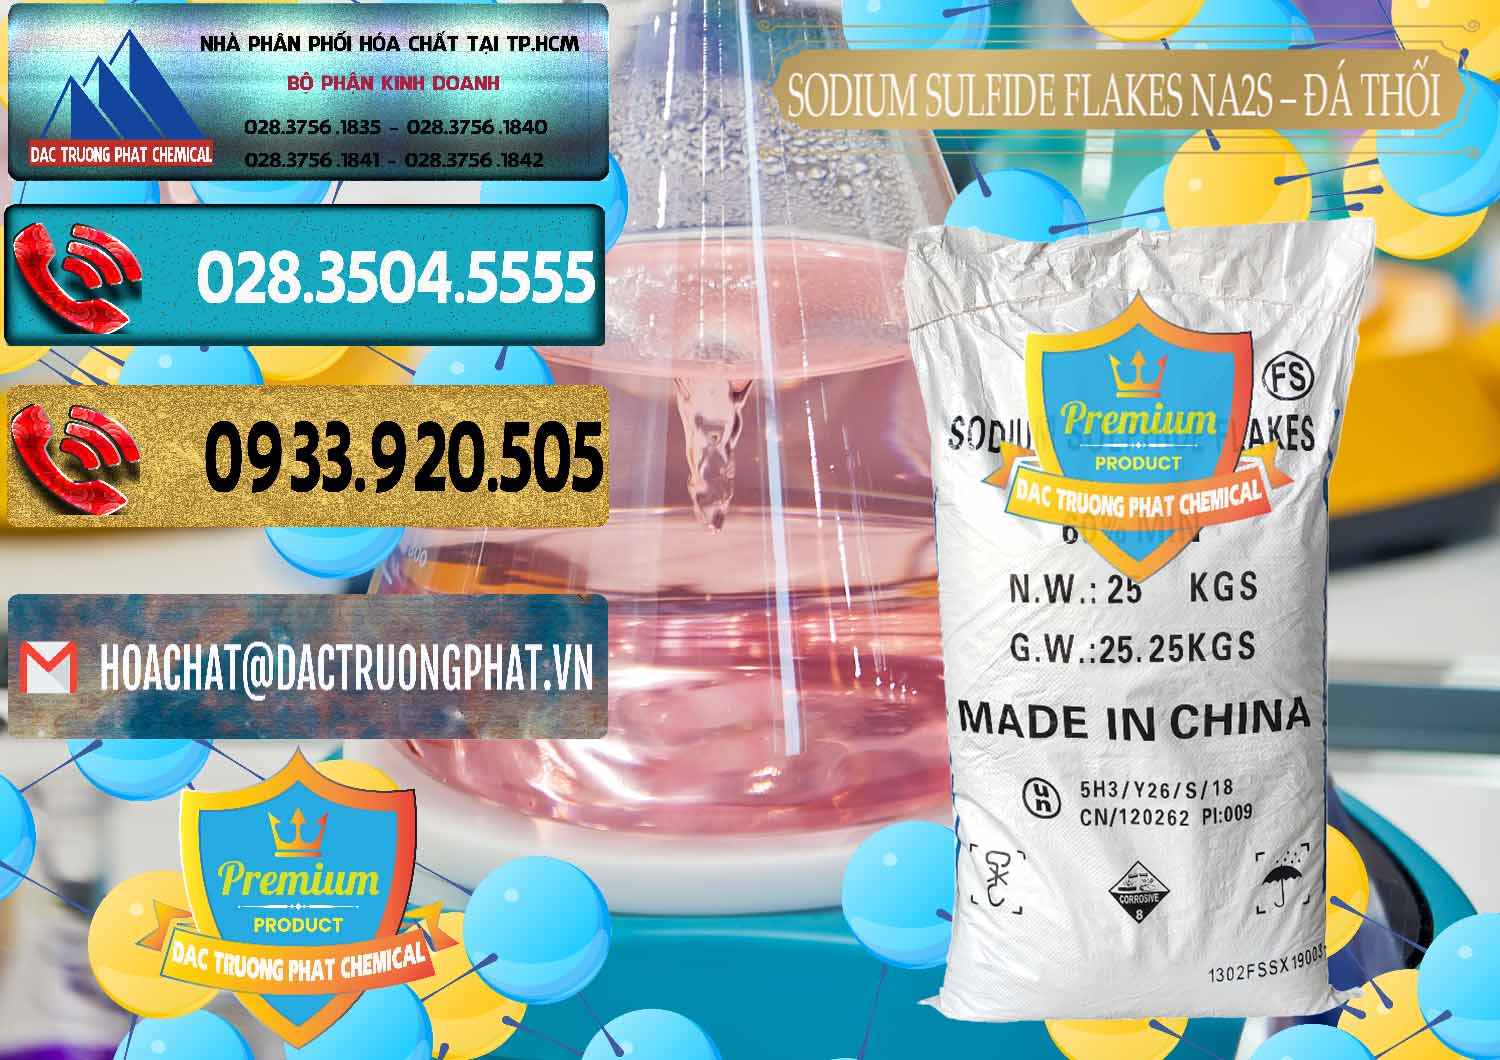 Cty cung ứng _ bán Sodium Sulfide Flakes NA2S – Đá Thối Đỏ Trung Quốc China - 0150 - Công ty chuyên cung cấp - nhập khẩu hóa chất tại TP.HCM - hoachatdetnhuom.com